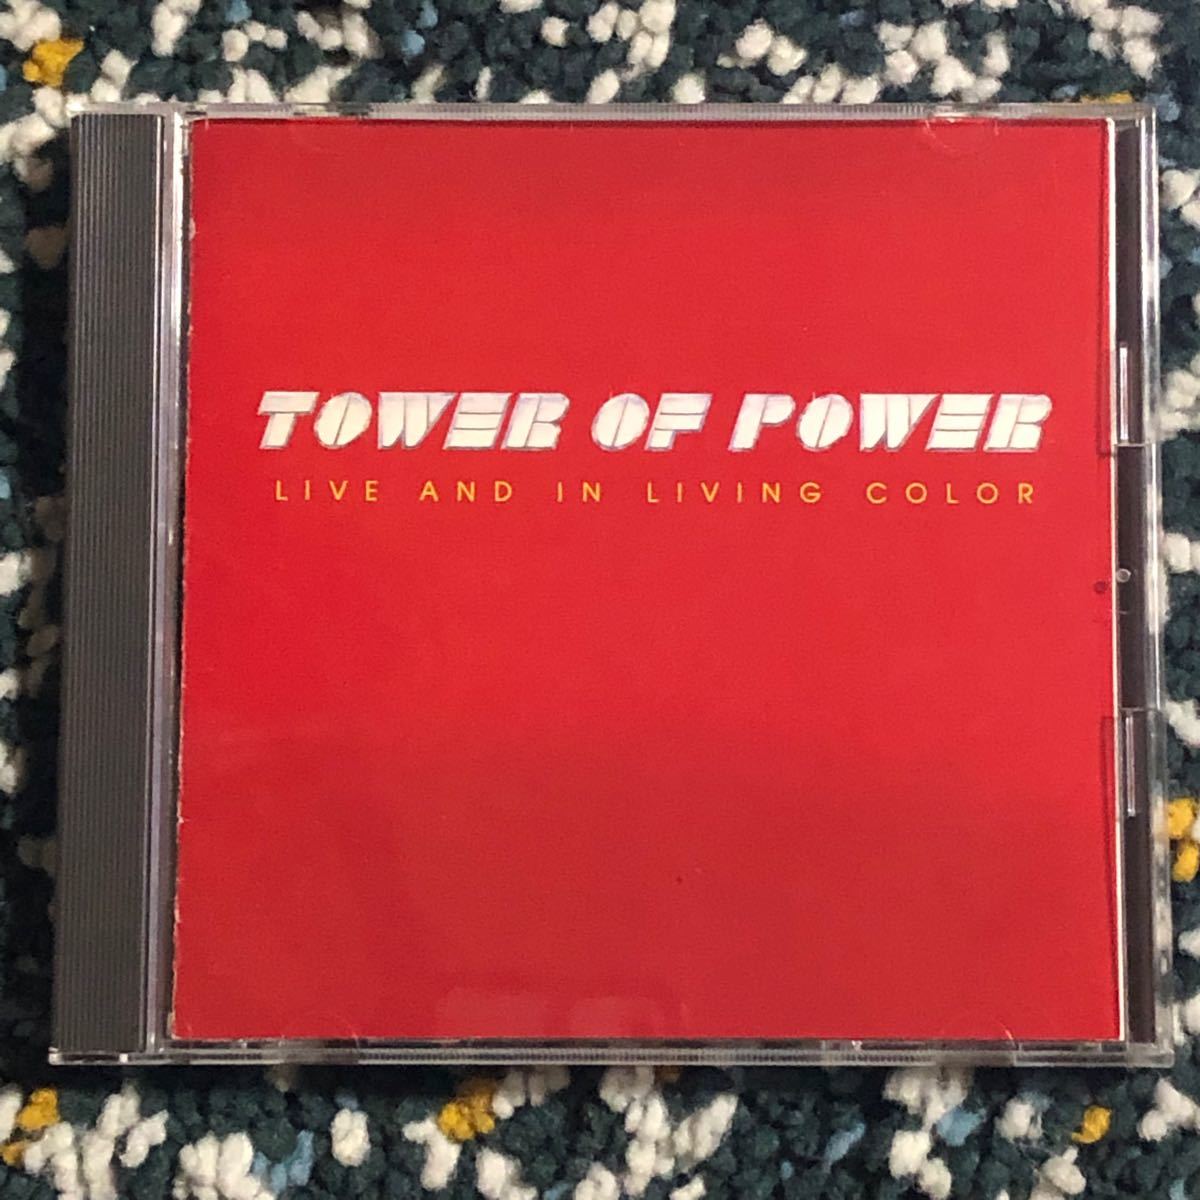 【国内盤CD】タワー・オブ・パワー『ベスト・ライヴ』- ロッコ&ガリバルディ+ ブルース・コンテによる全盛期作品